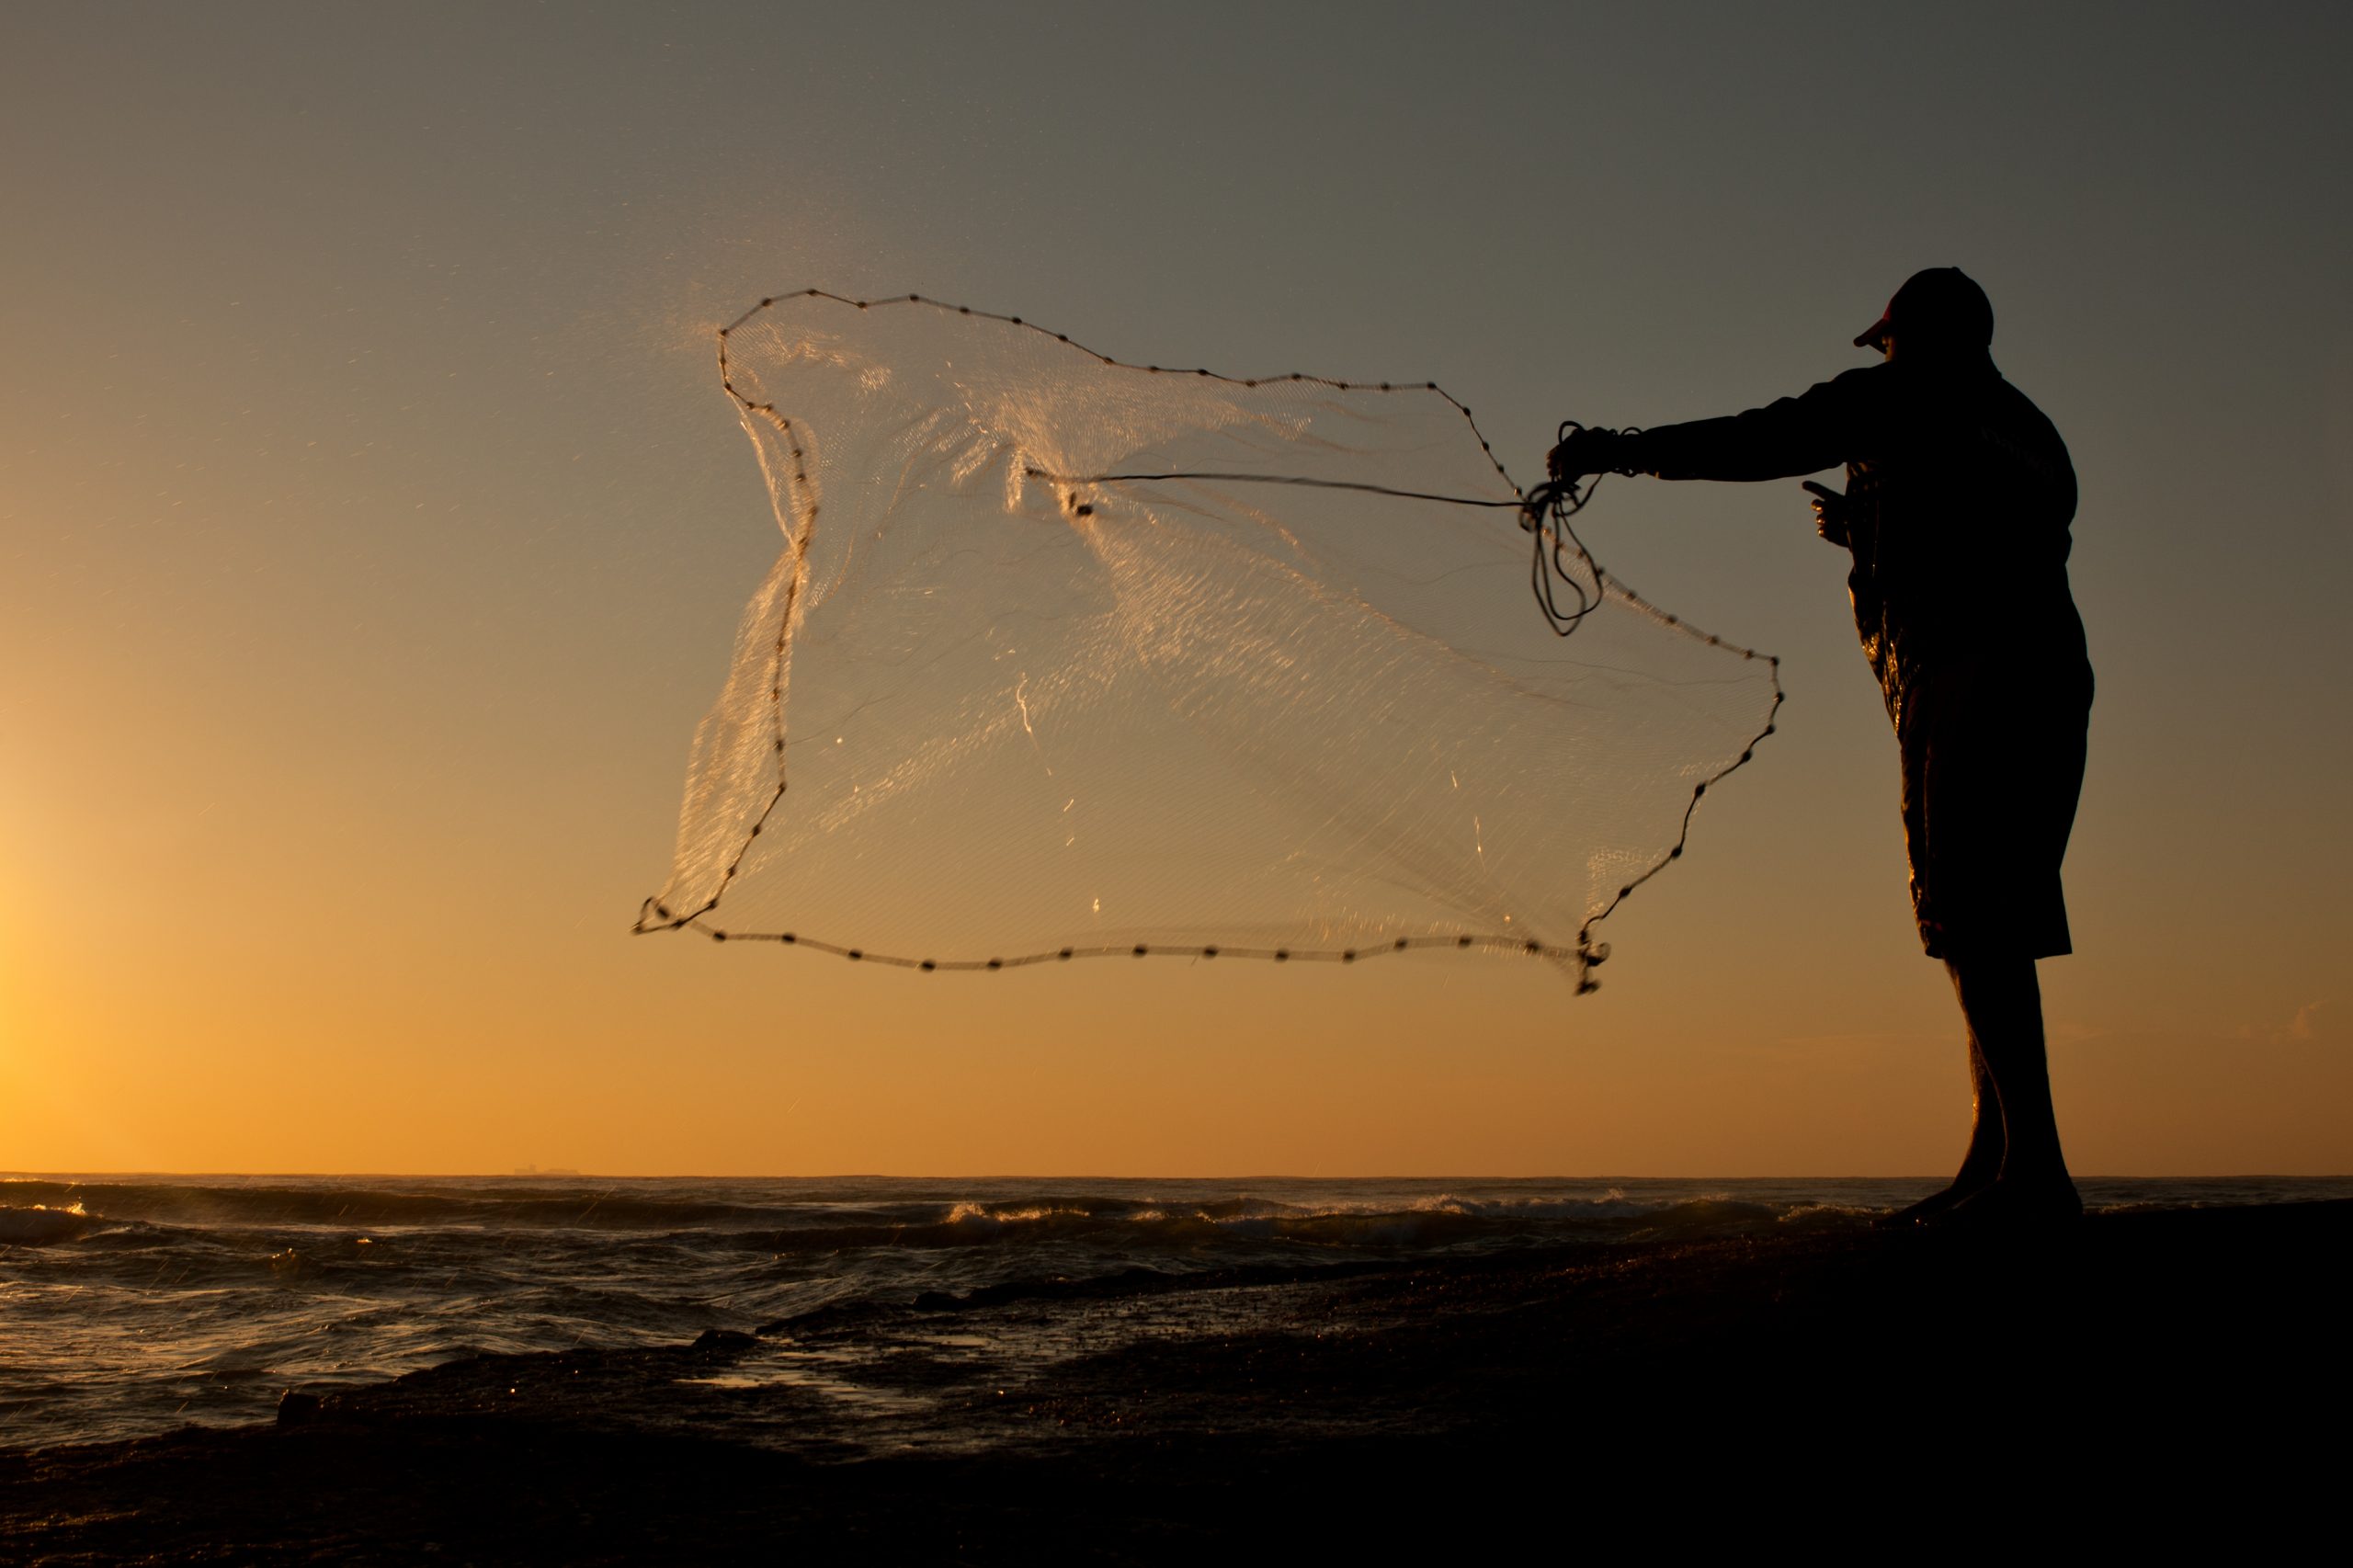 Fishing nets, throwing net fish net hand throwing fishing cast net